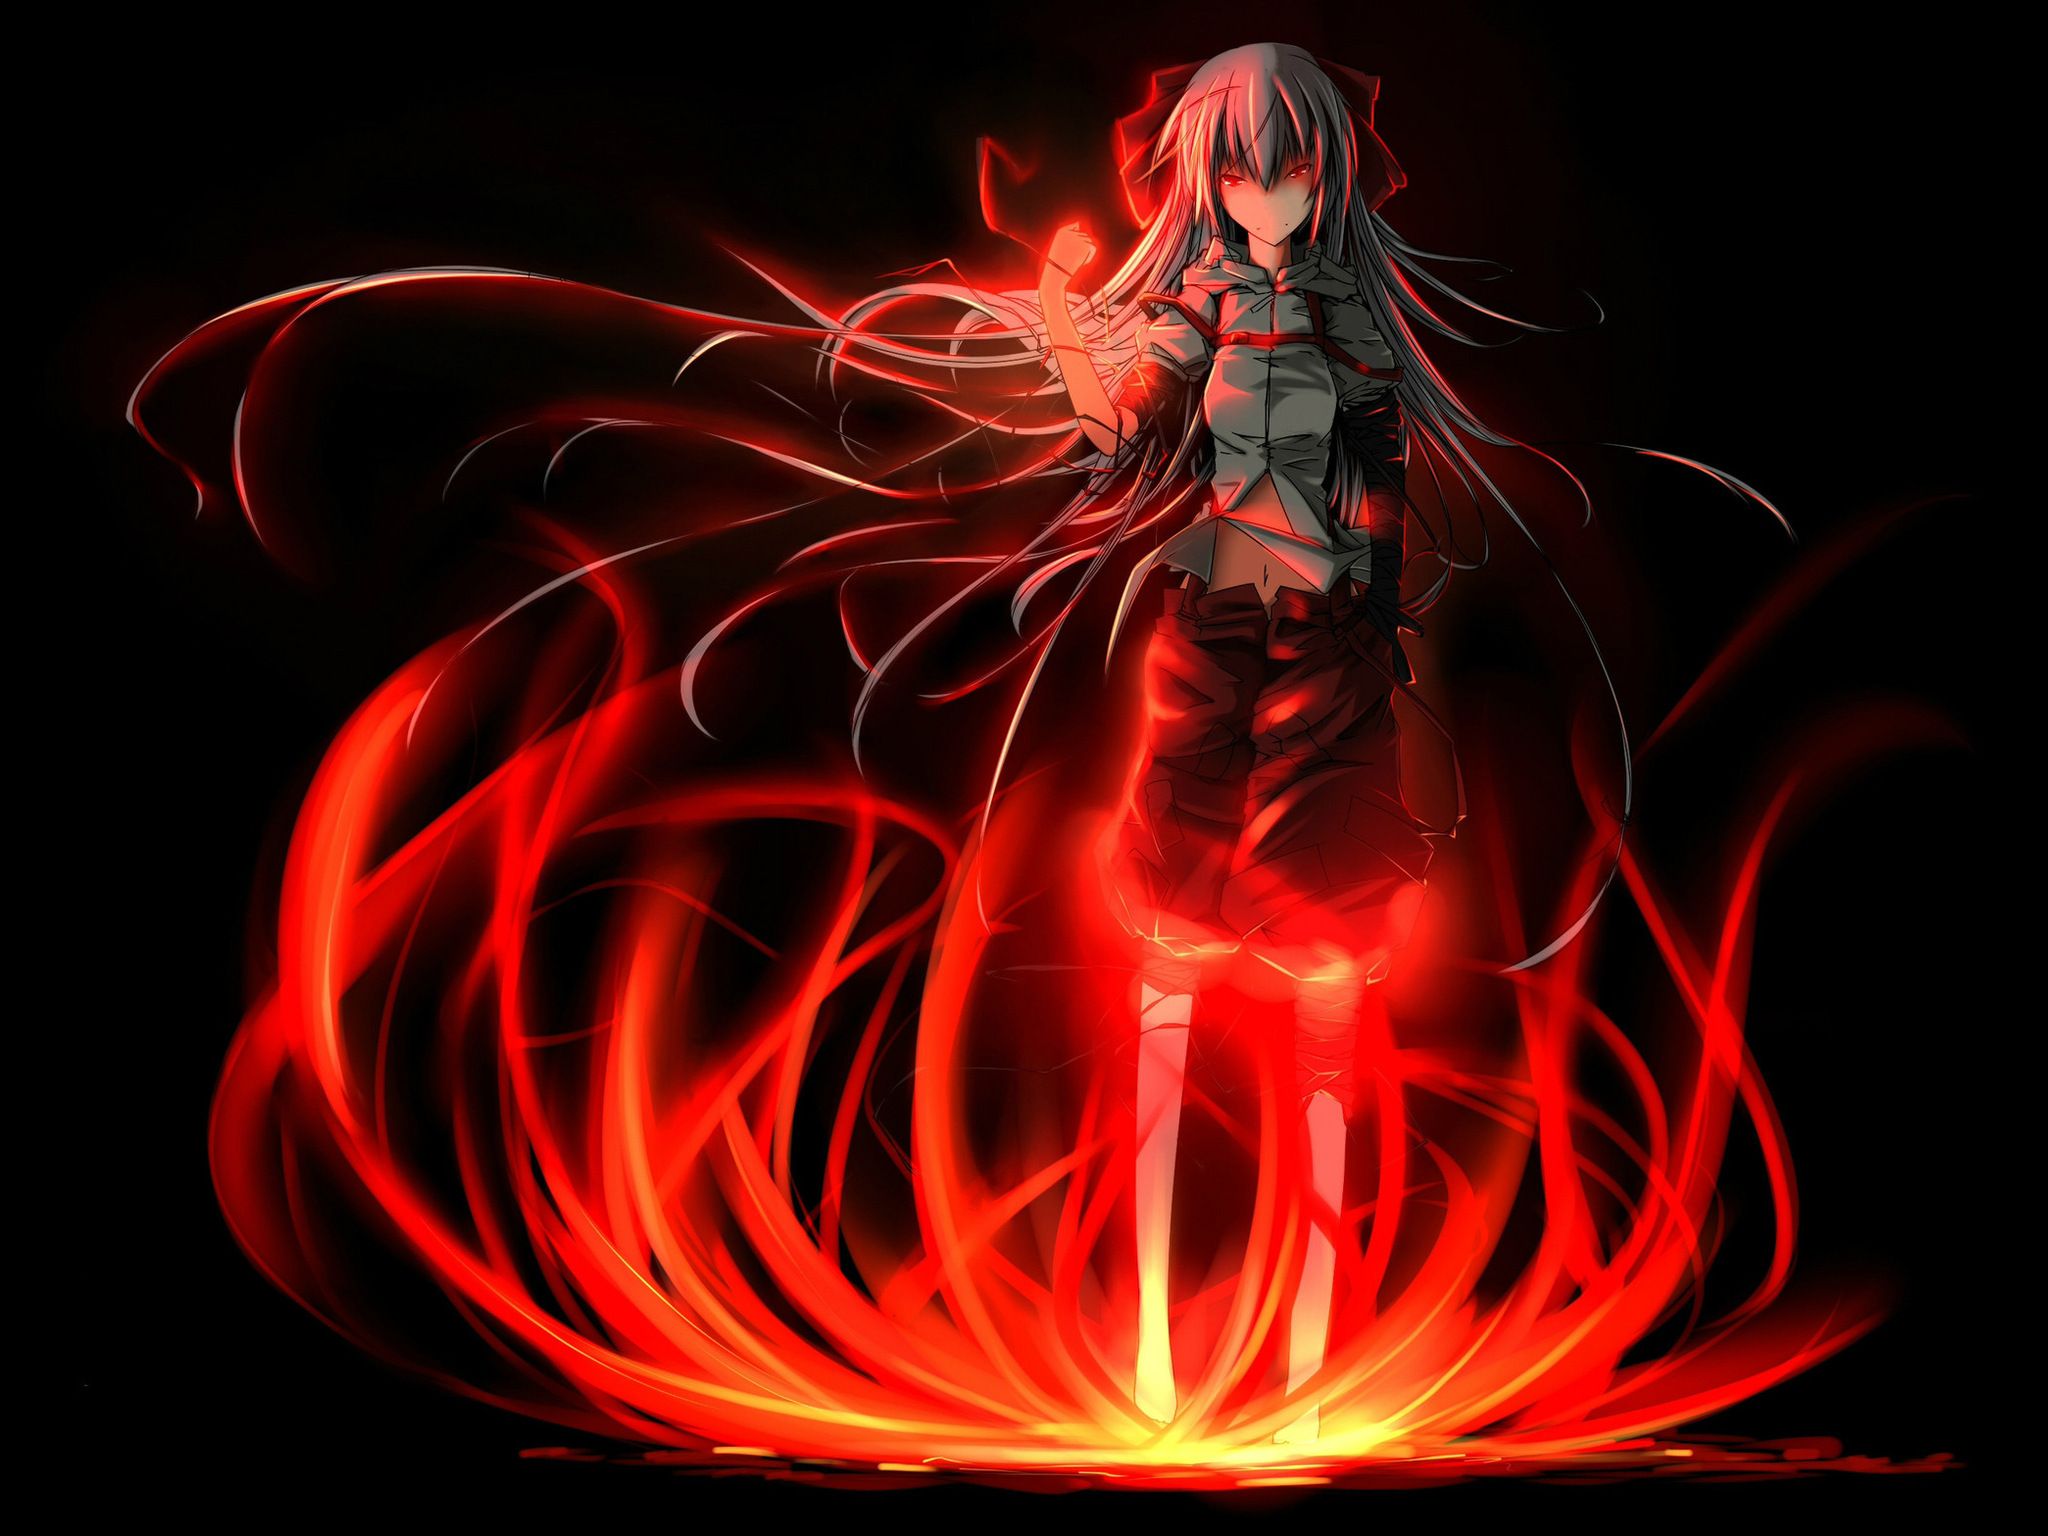 Sad Anime Wallpaper Girl On Fire .wallpapertip.com